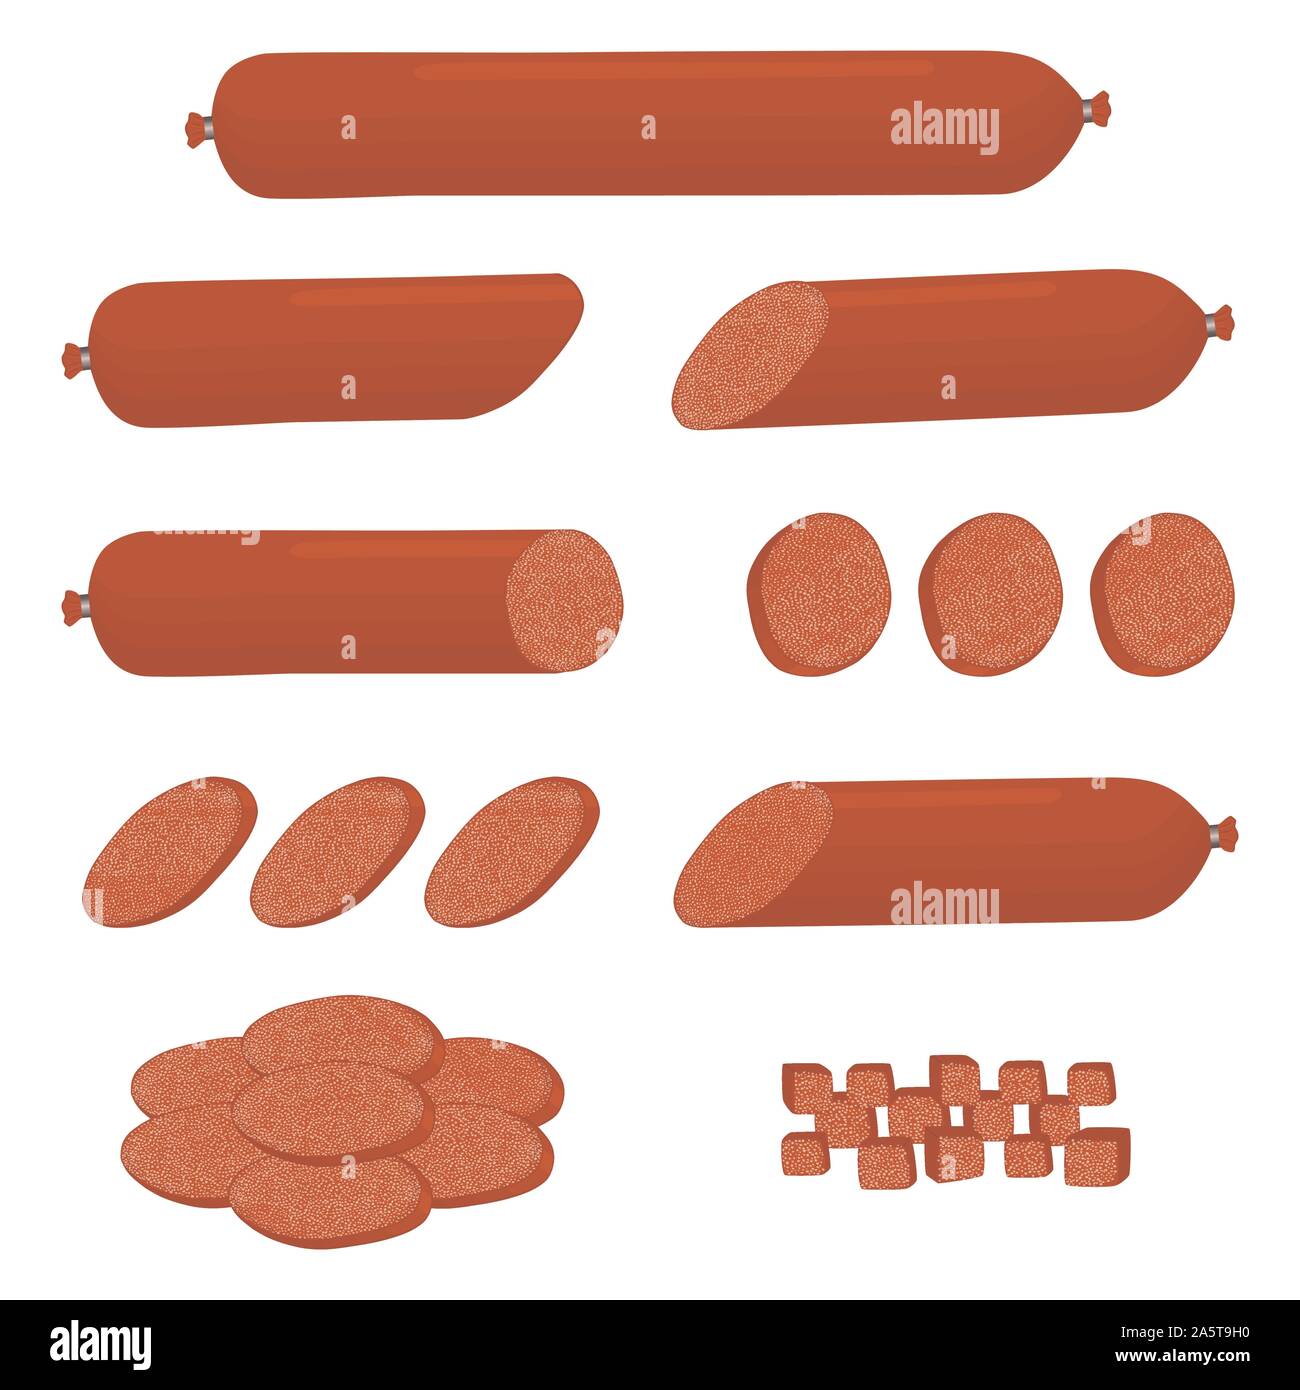 Icône vecteur illustration logo pour définir ensemble le salami, saucisses de porc en tranches de jambon. Profil de saucisse est composé d'une cuisine savoureuse viande, la moitié frankfurter. E Illustration de Vecteur